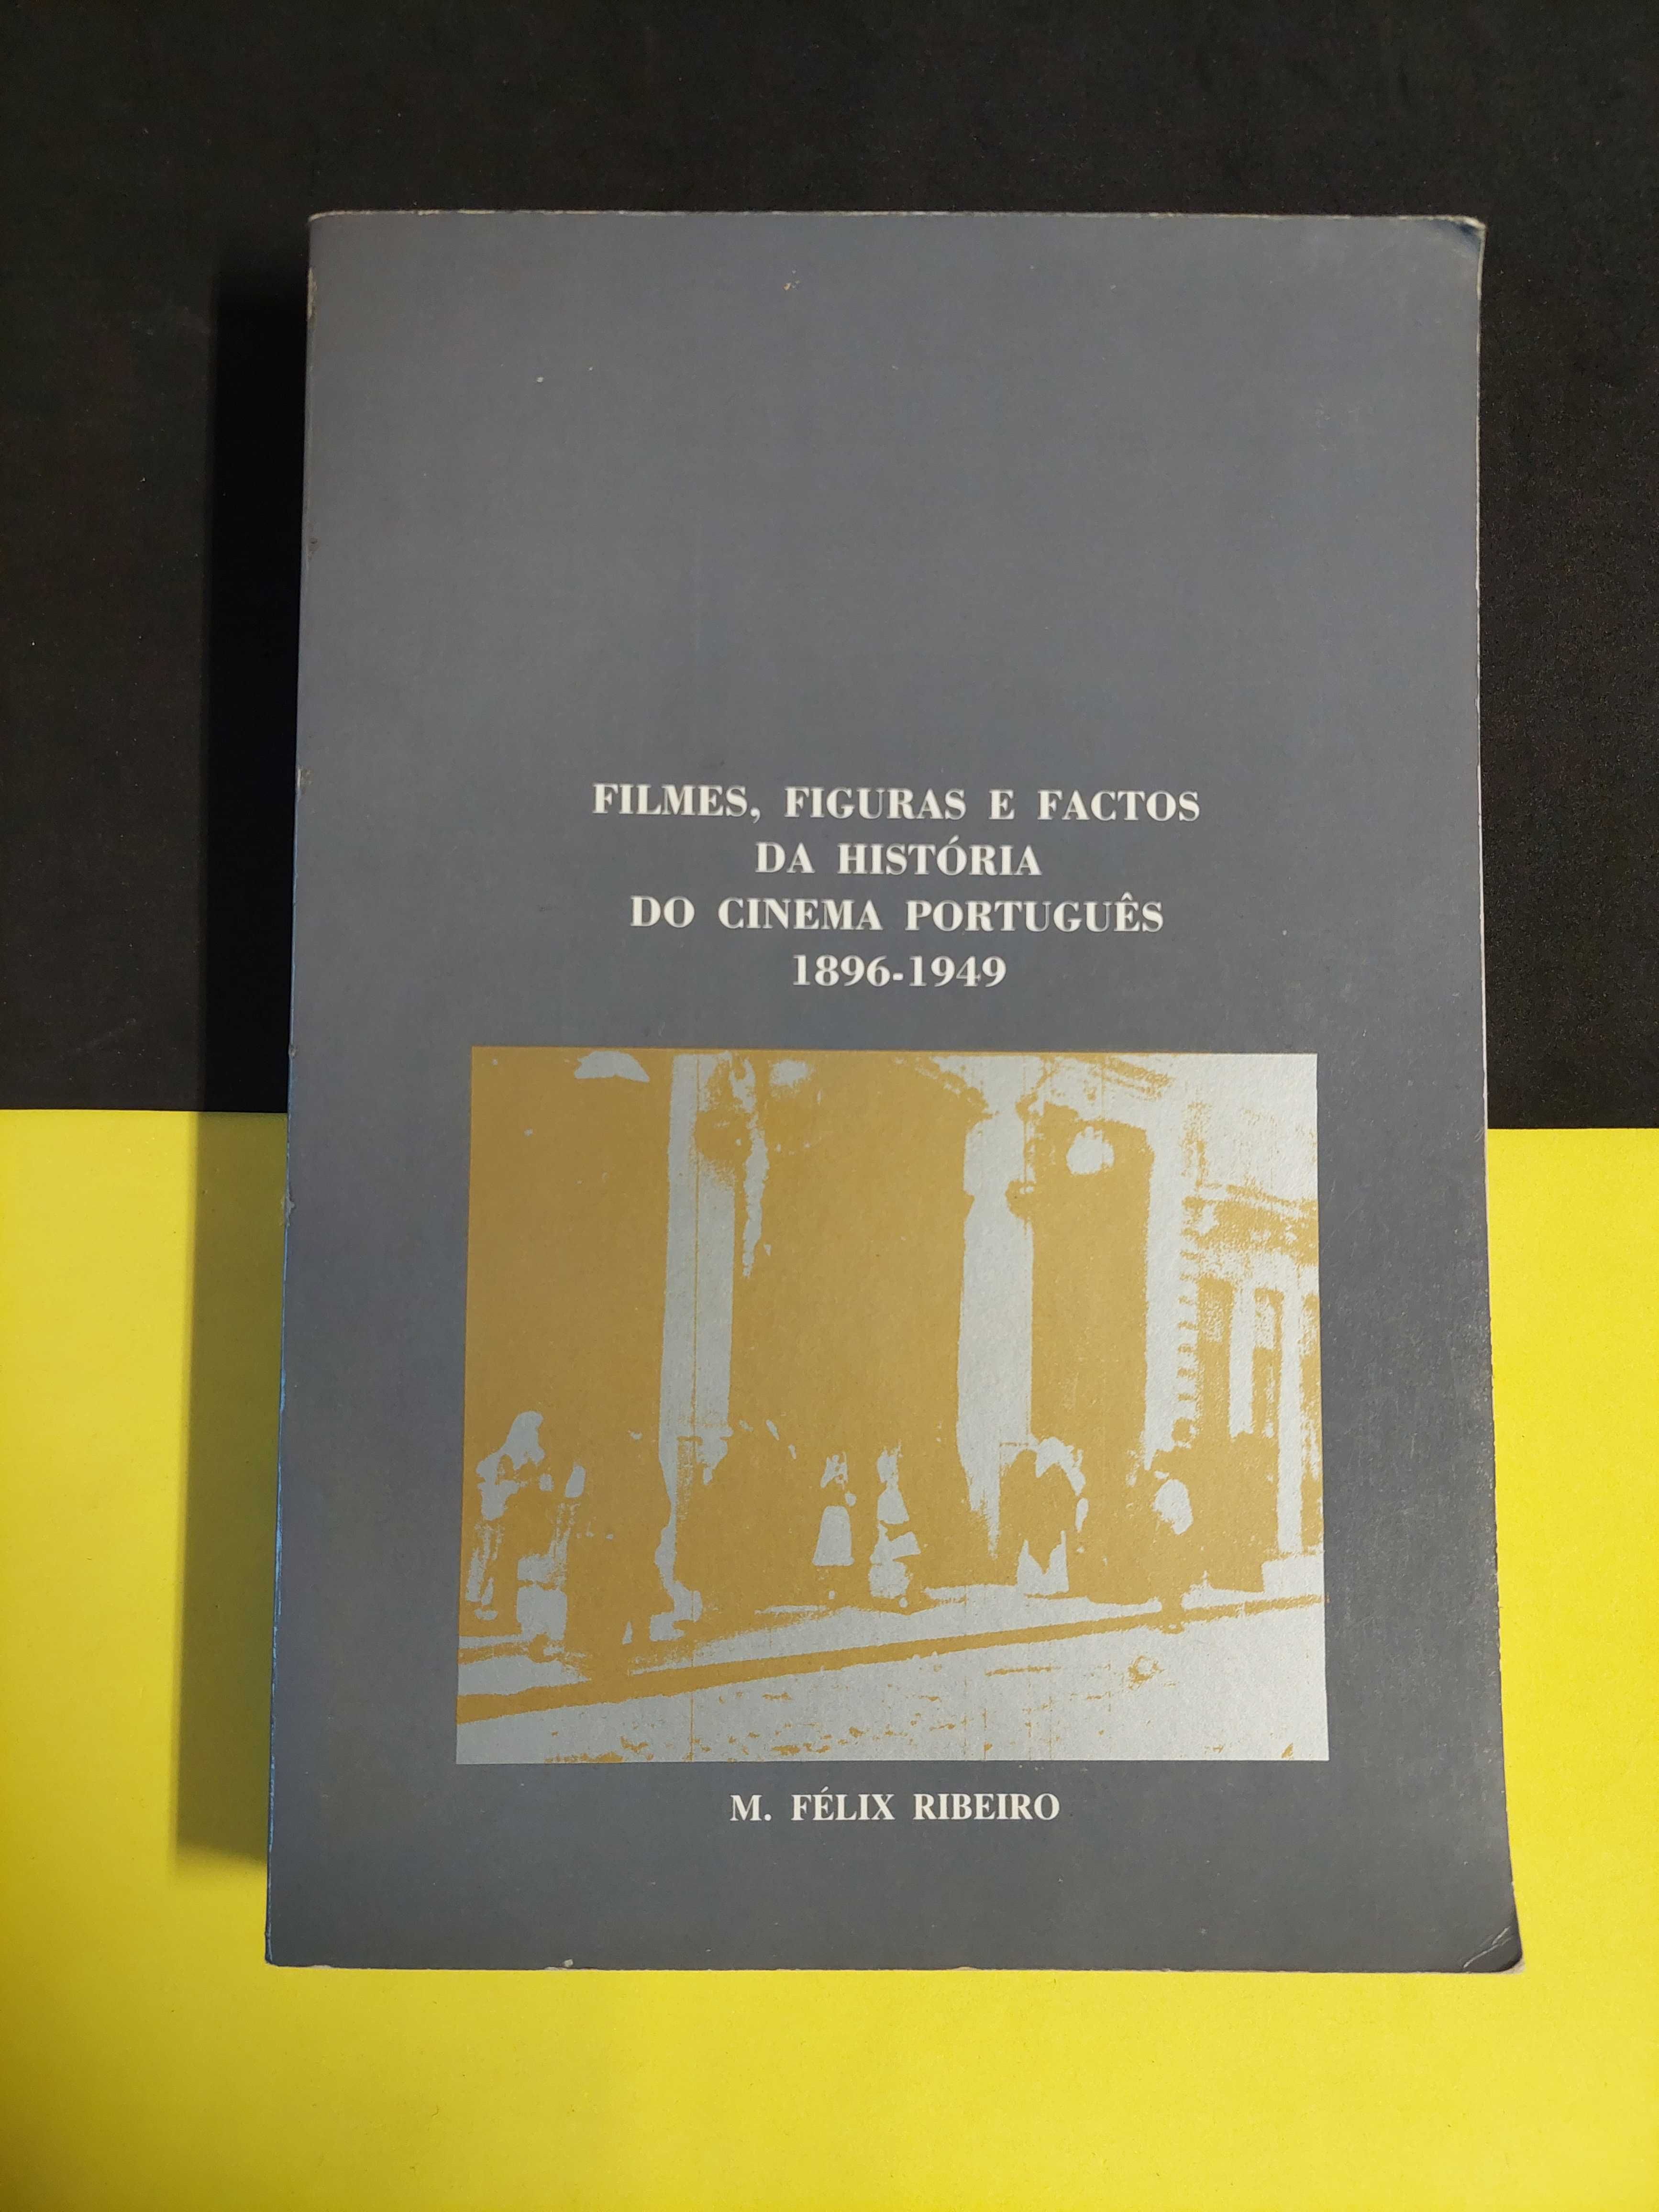 Filmes, figuras e factos da história do cinema português 1896/1949